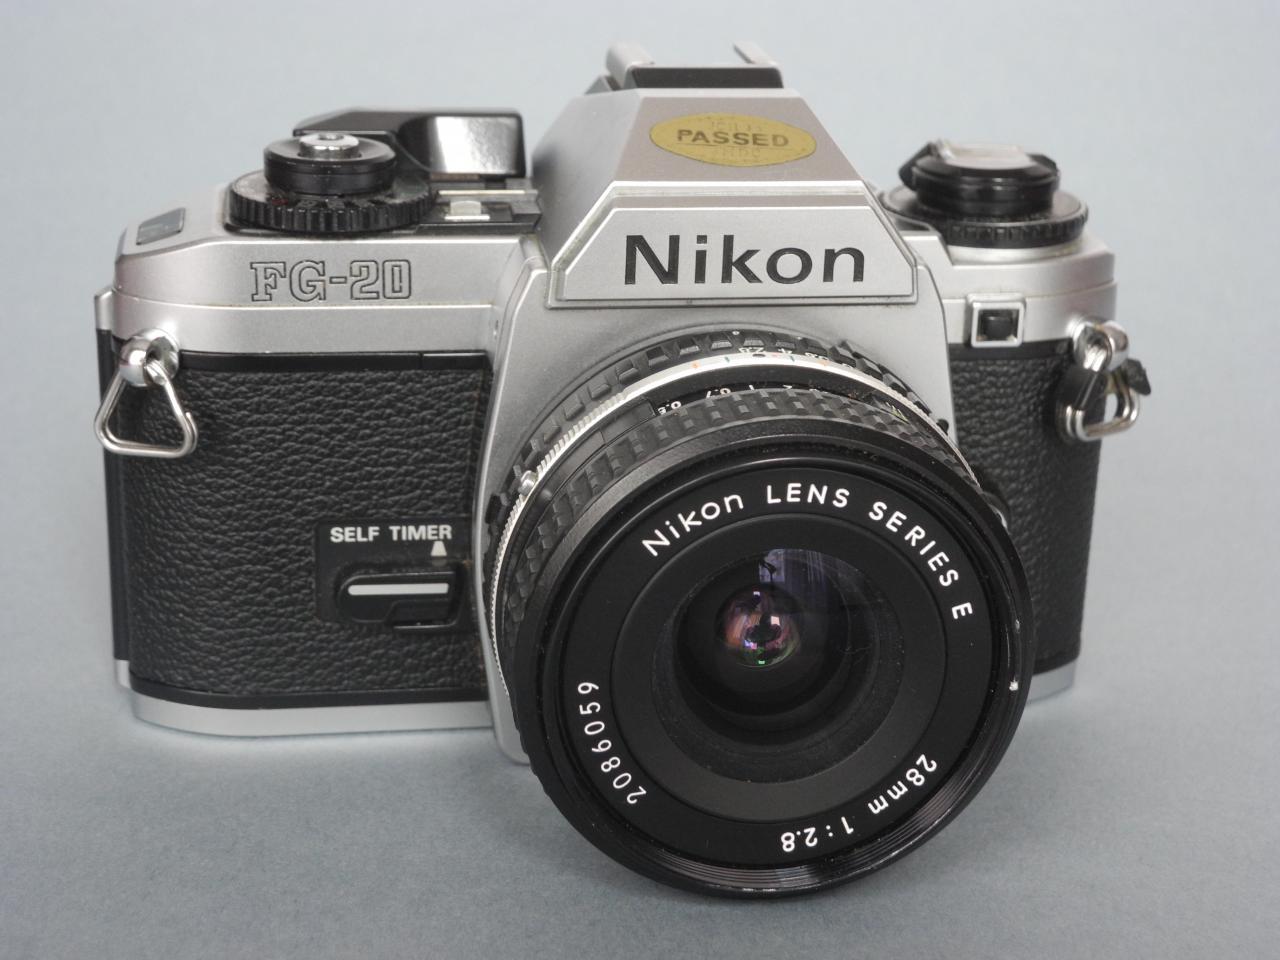 *Nikon FG-20 film135 1981*